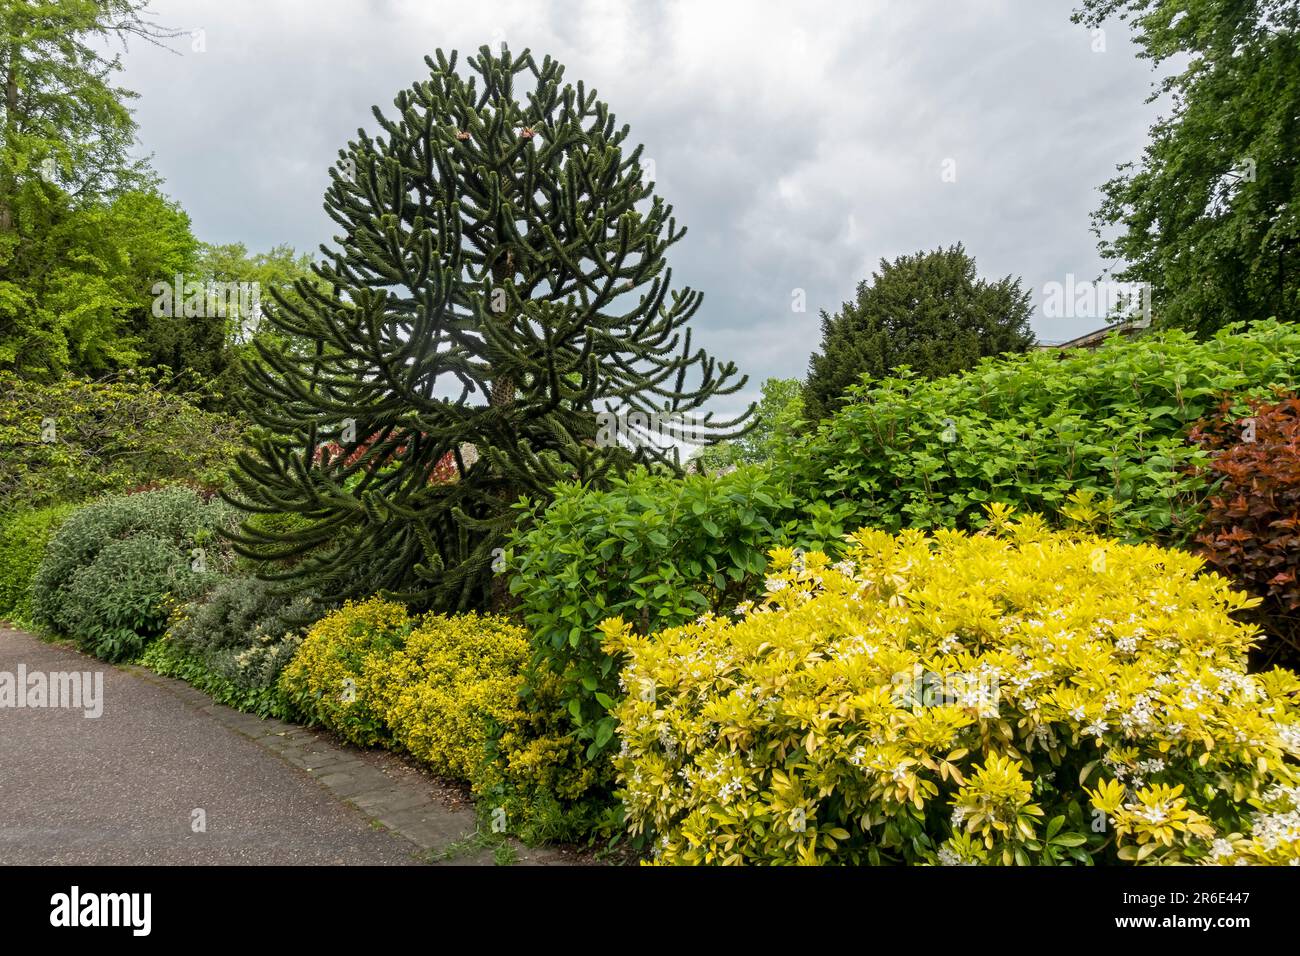 Junger Affenpuzzle Baum Araucaria araucana wächst in einem öffentlichen Park Gärten im Sommer York North Yorkshire England Vereinigtes Königreich GB Großbritannien Stockfoto